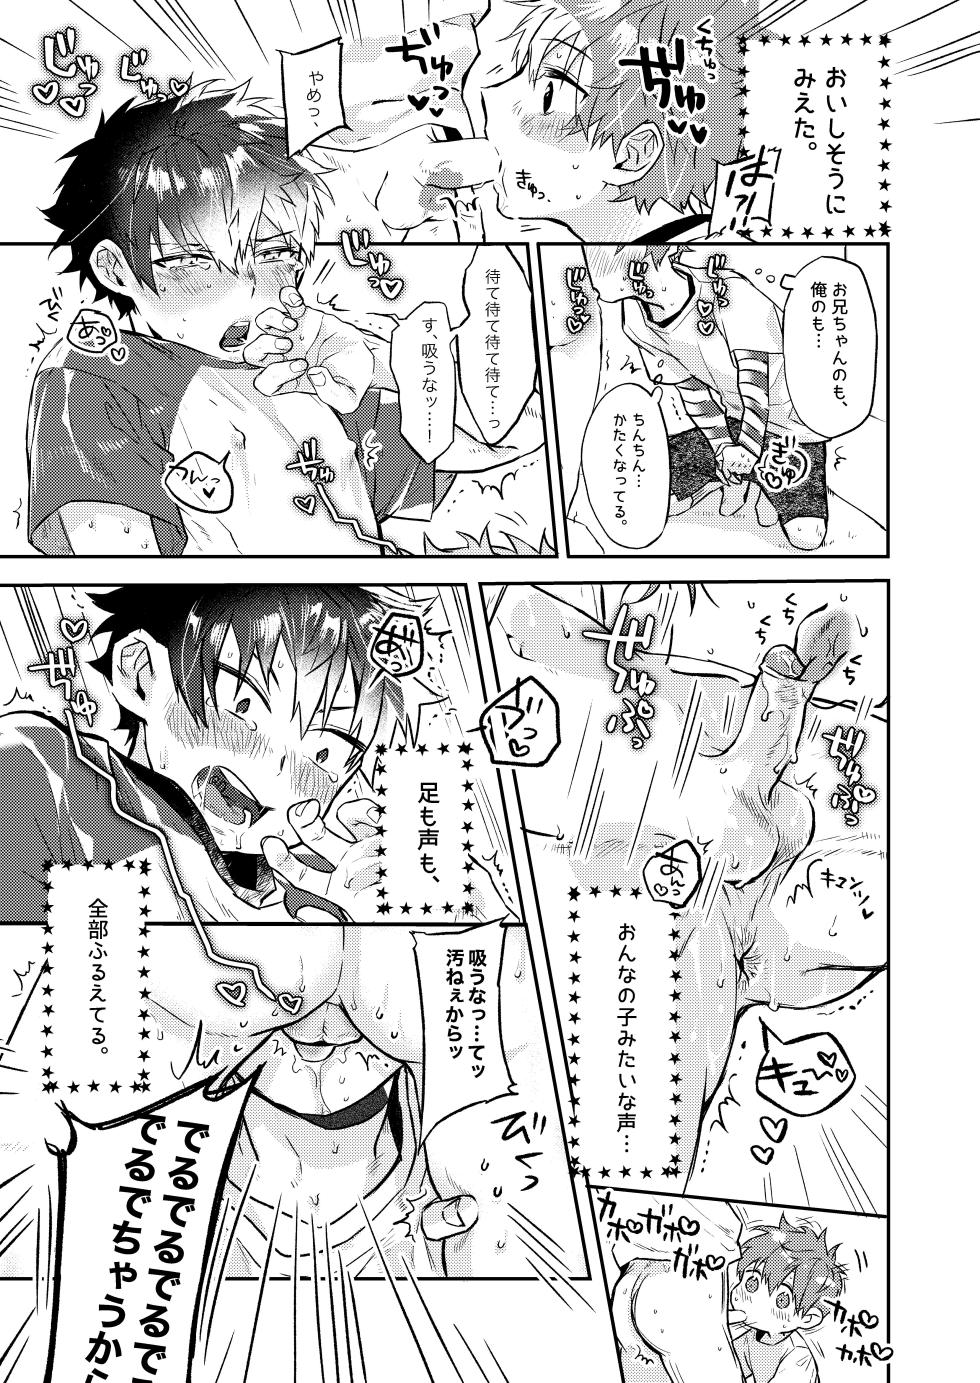 [UNC] Shota Sextet 6 (Yoshinaga Darao part) - Page 8